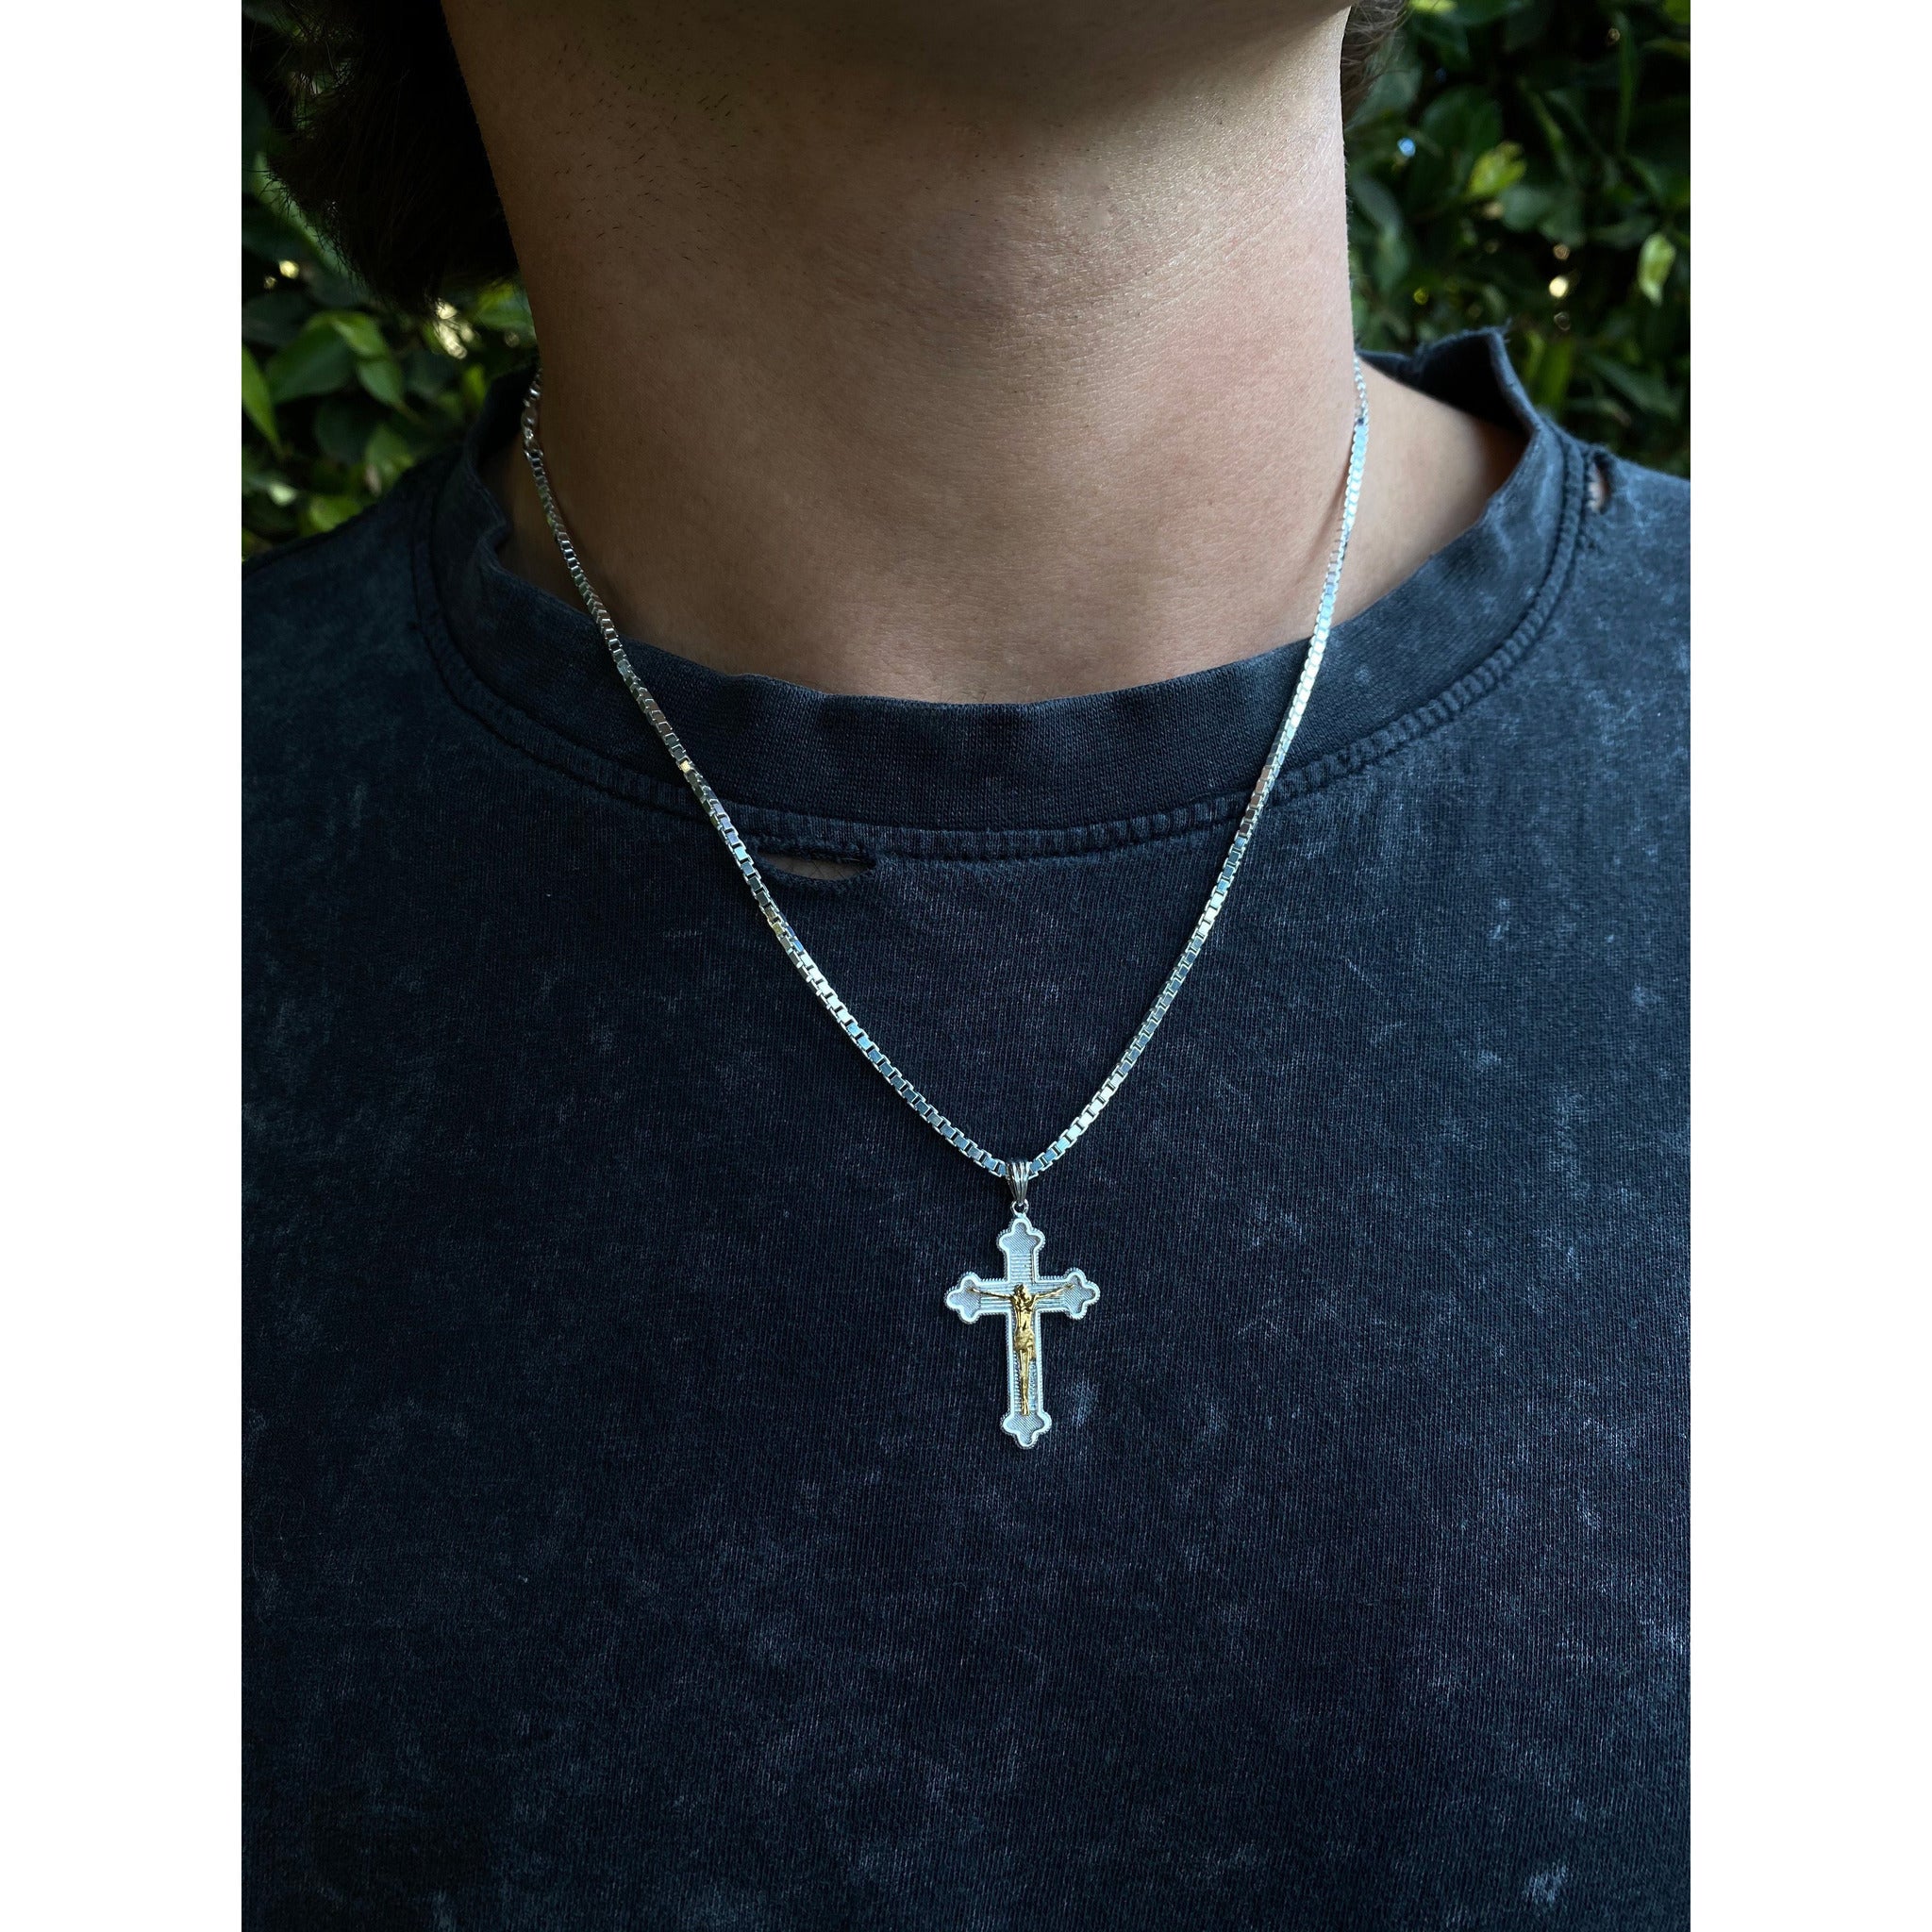 Stainless cross pendant